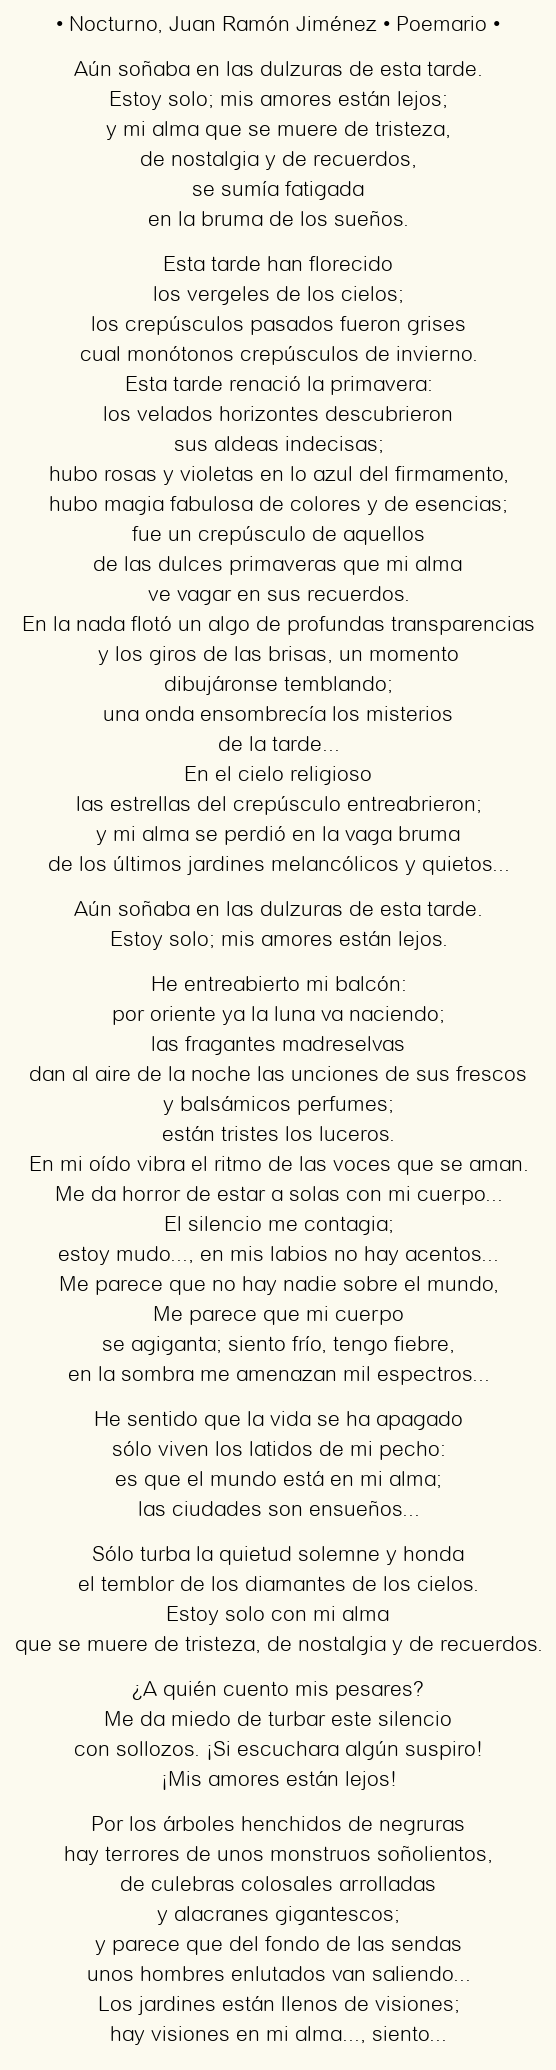 Imagen con el poema Nocturno, por Juan Ramón Jiménez